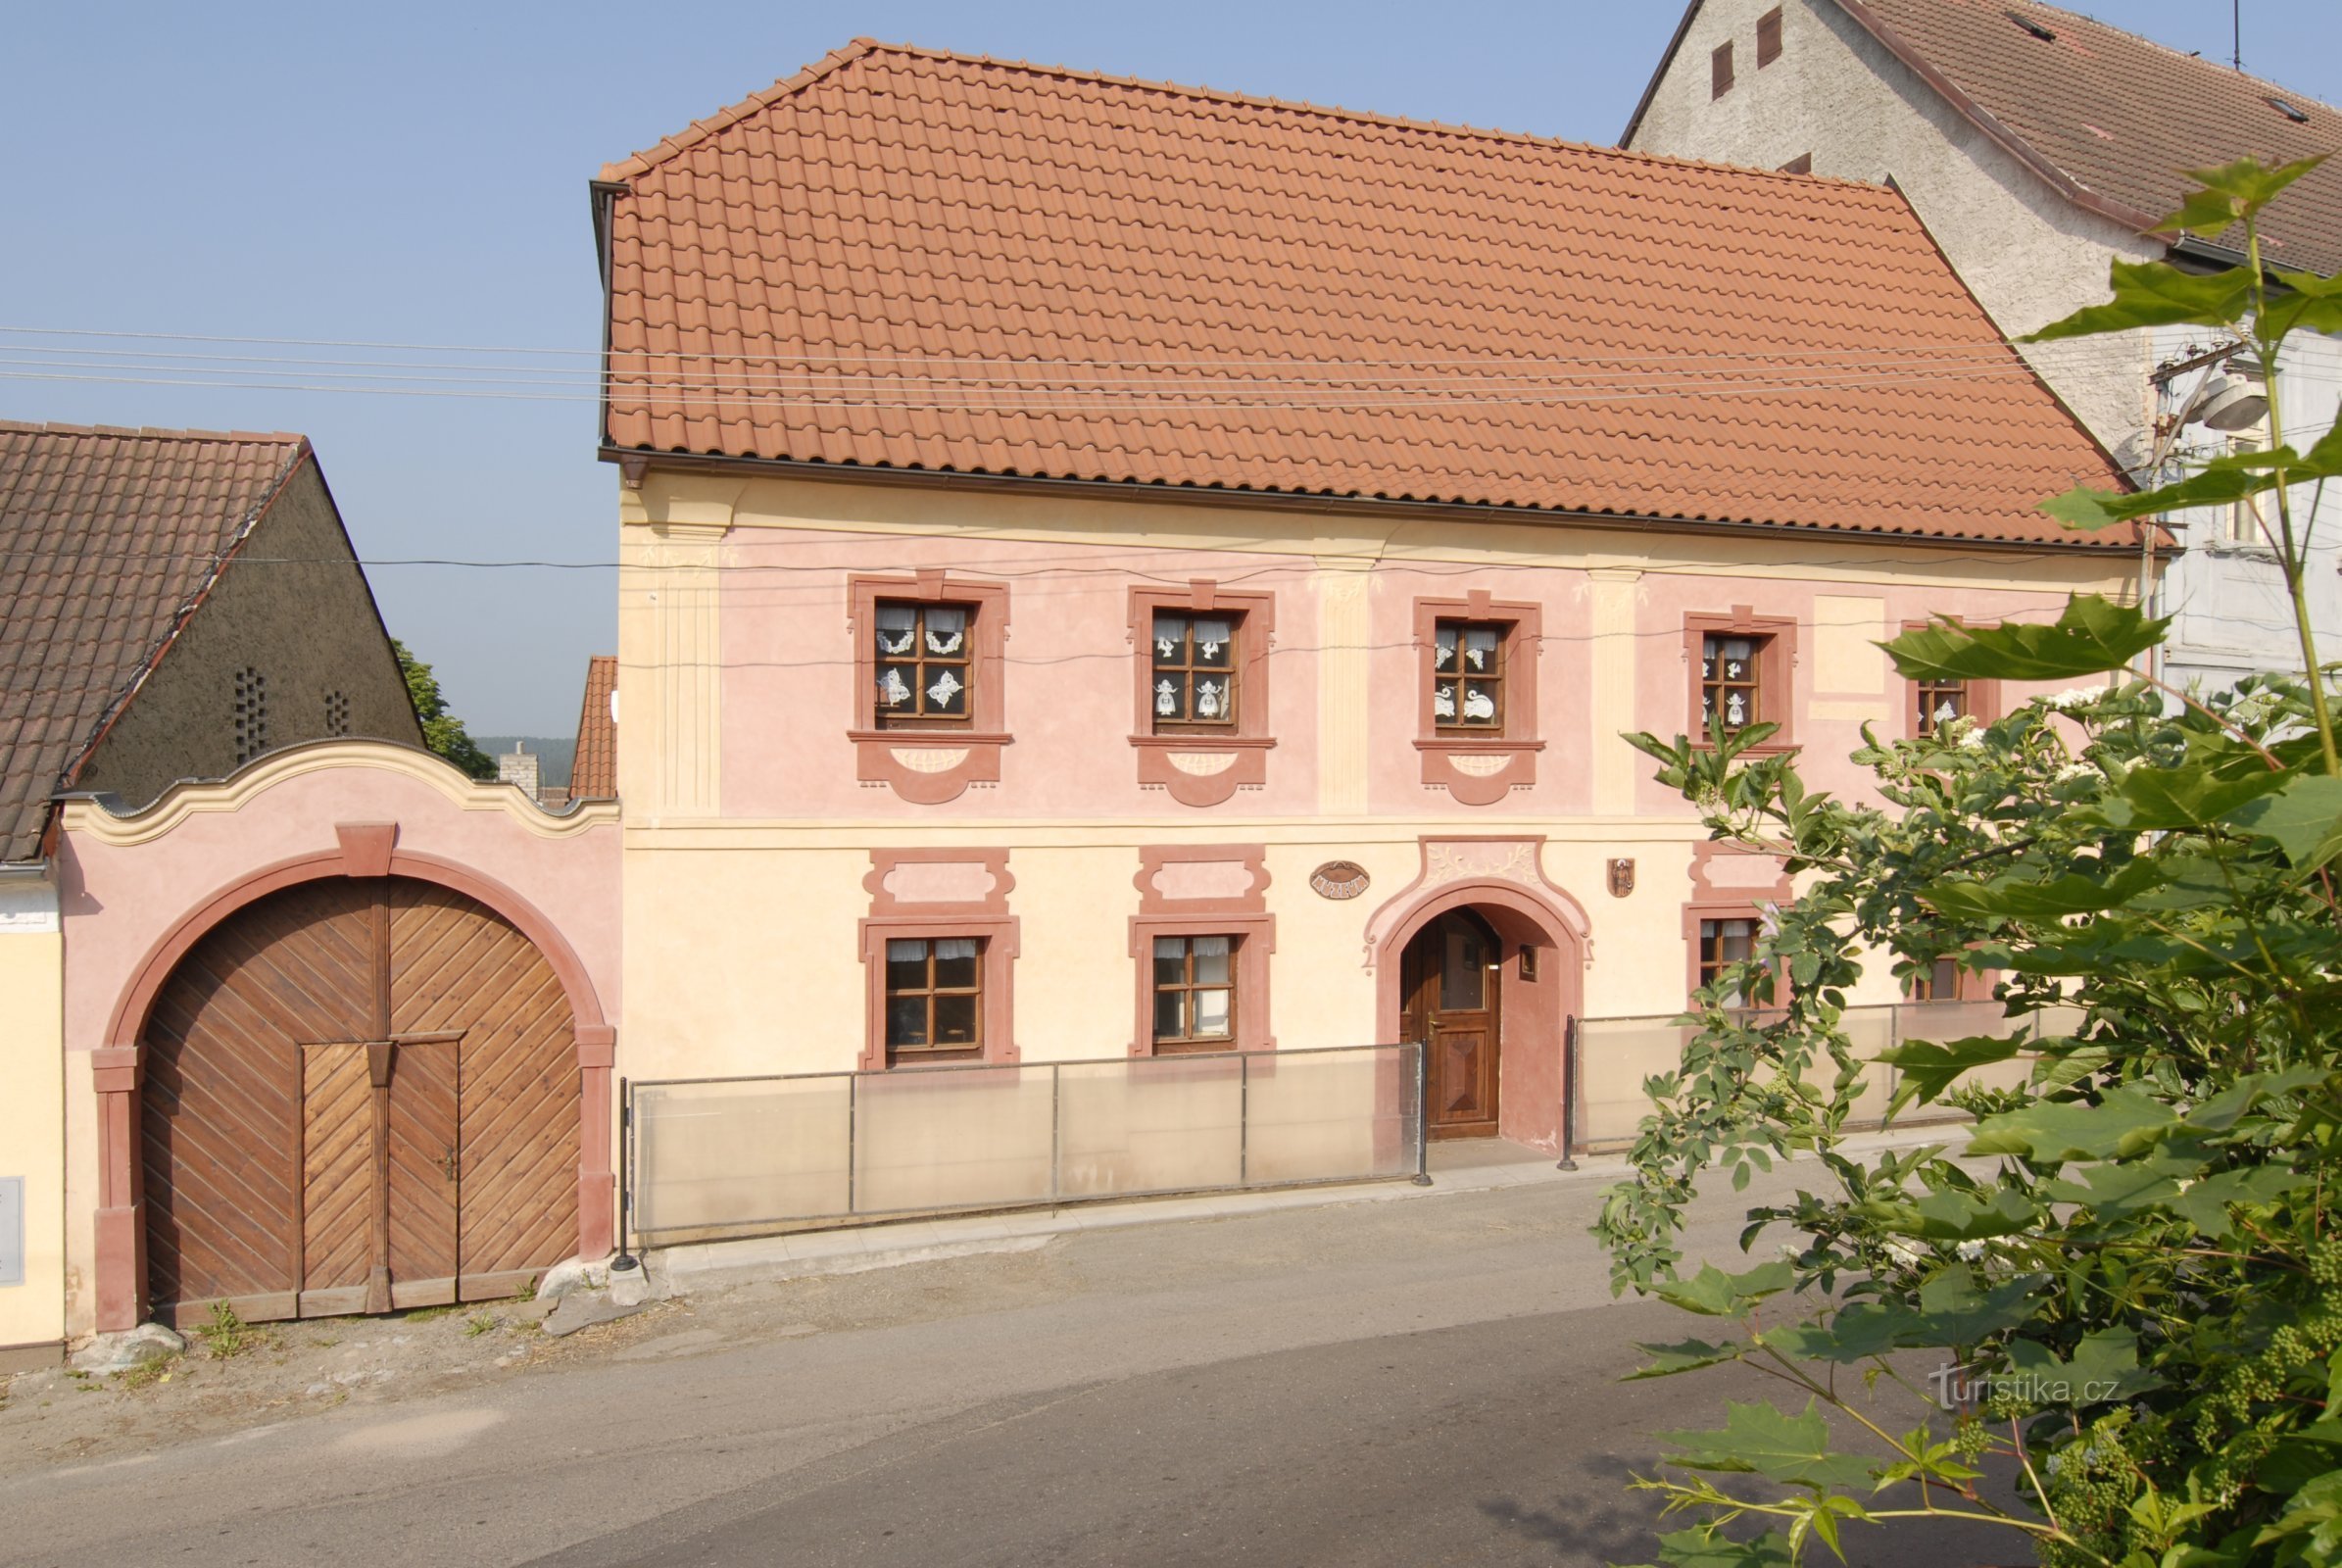 Muzeum Štěpánovské